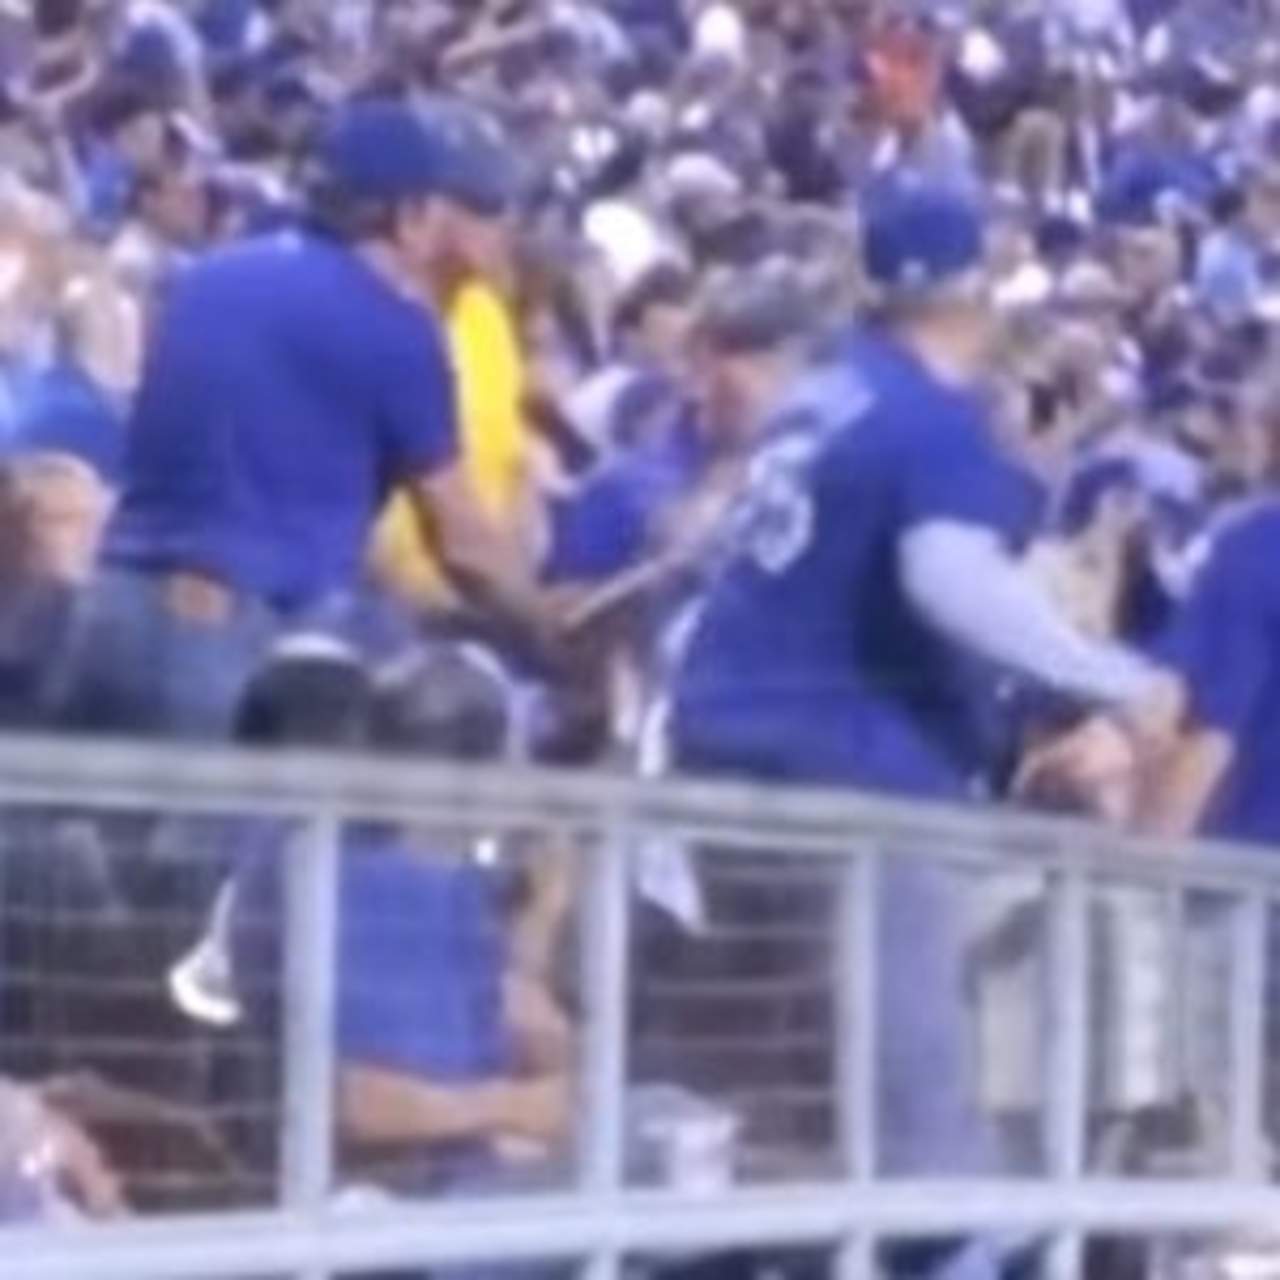 Mujer es golpeada por un hombre en pleno juego de béisbol